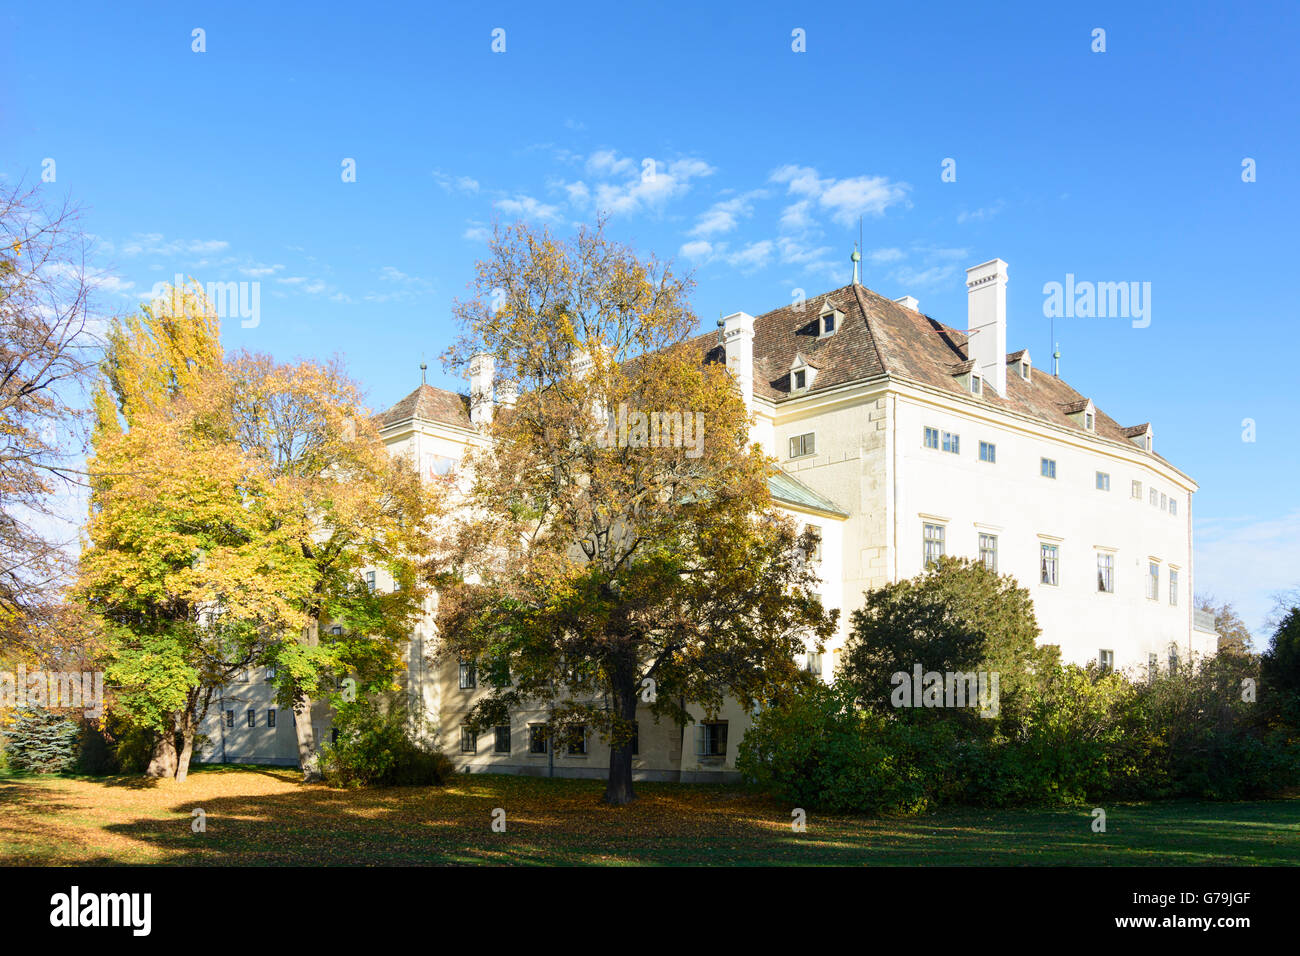 Schlosspark Laxenburg with the Old Castle, Laxenburg, Austria, Niederösterreich, Lower Austria, Wienerwald, Vienna Woods Stock Photo